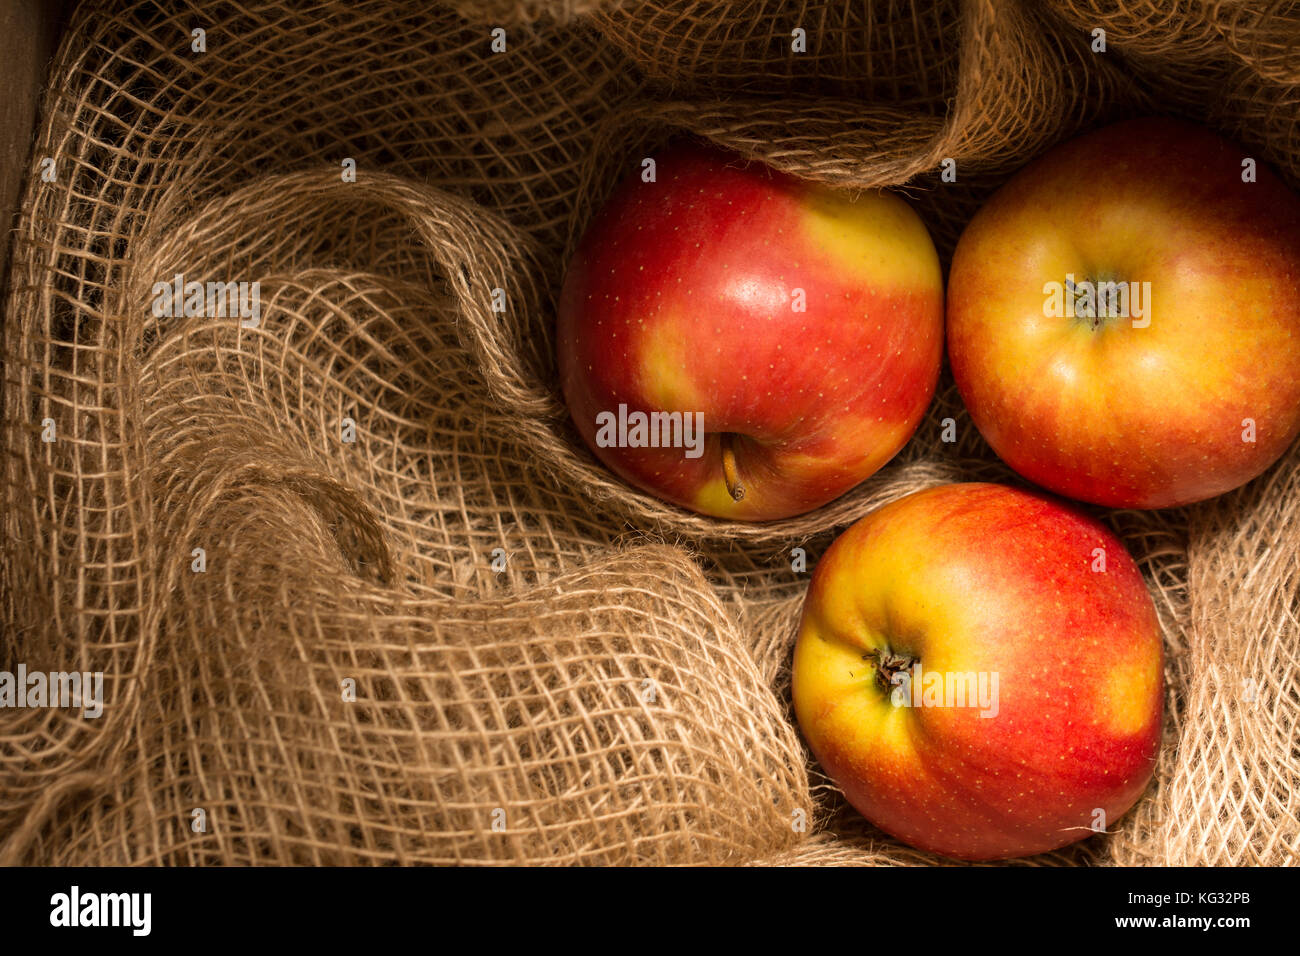 Trois mûres, les pommes rouges et jaunes stockés sur un filet de jute Banque D'Images